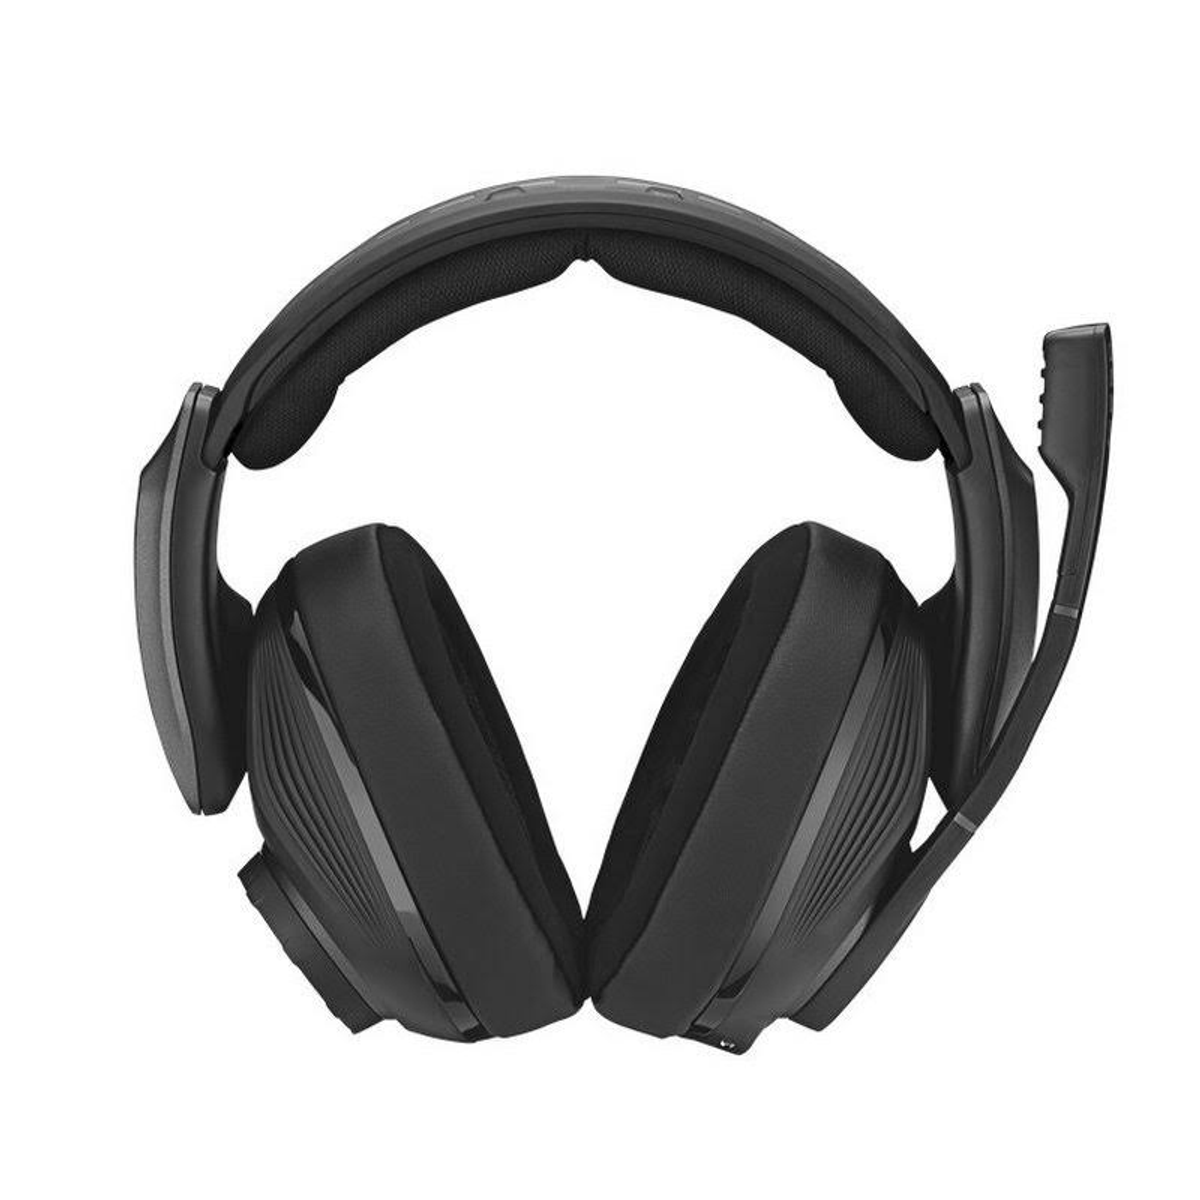 SENNHEISER GSP 670, Bluetooth Headset Schwarz On-ear Gaming